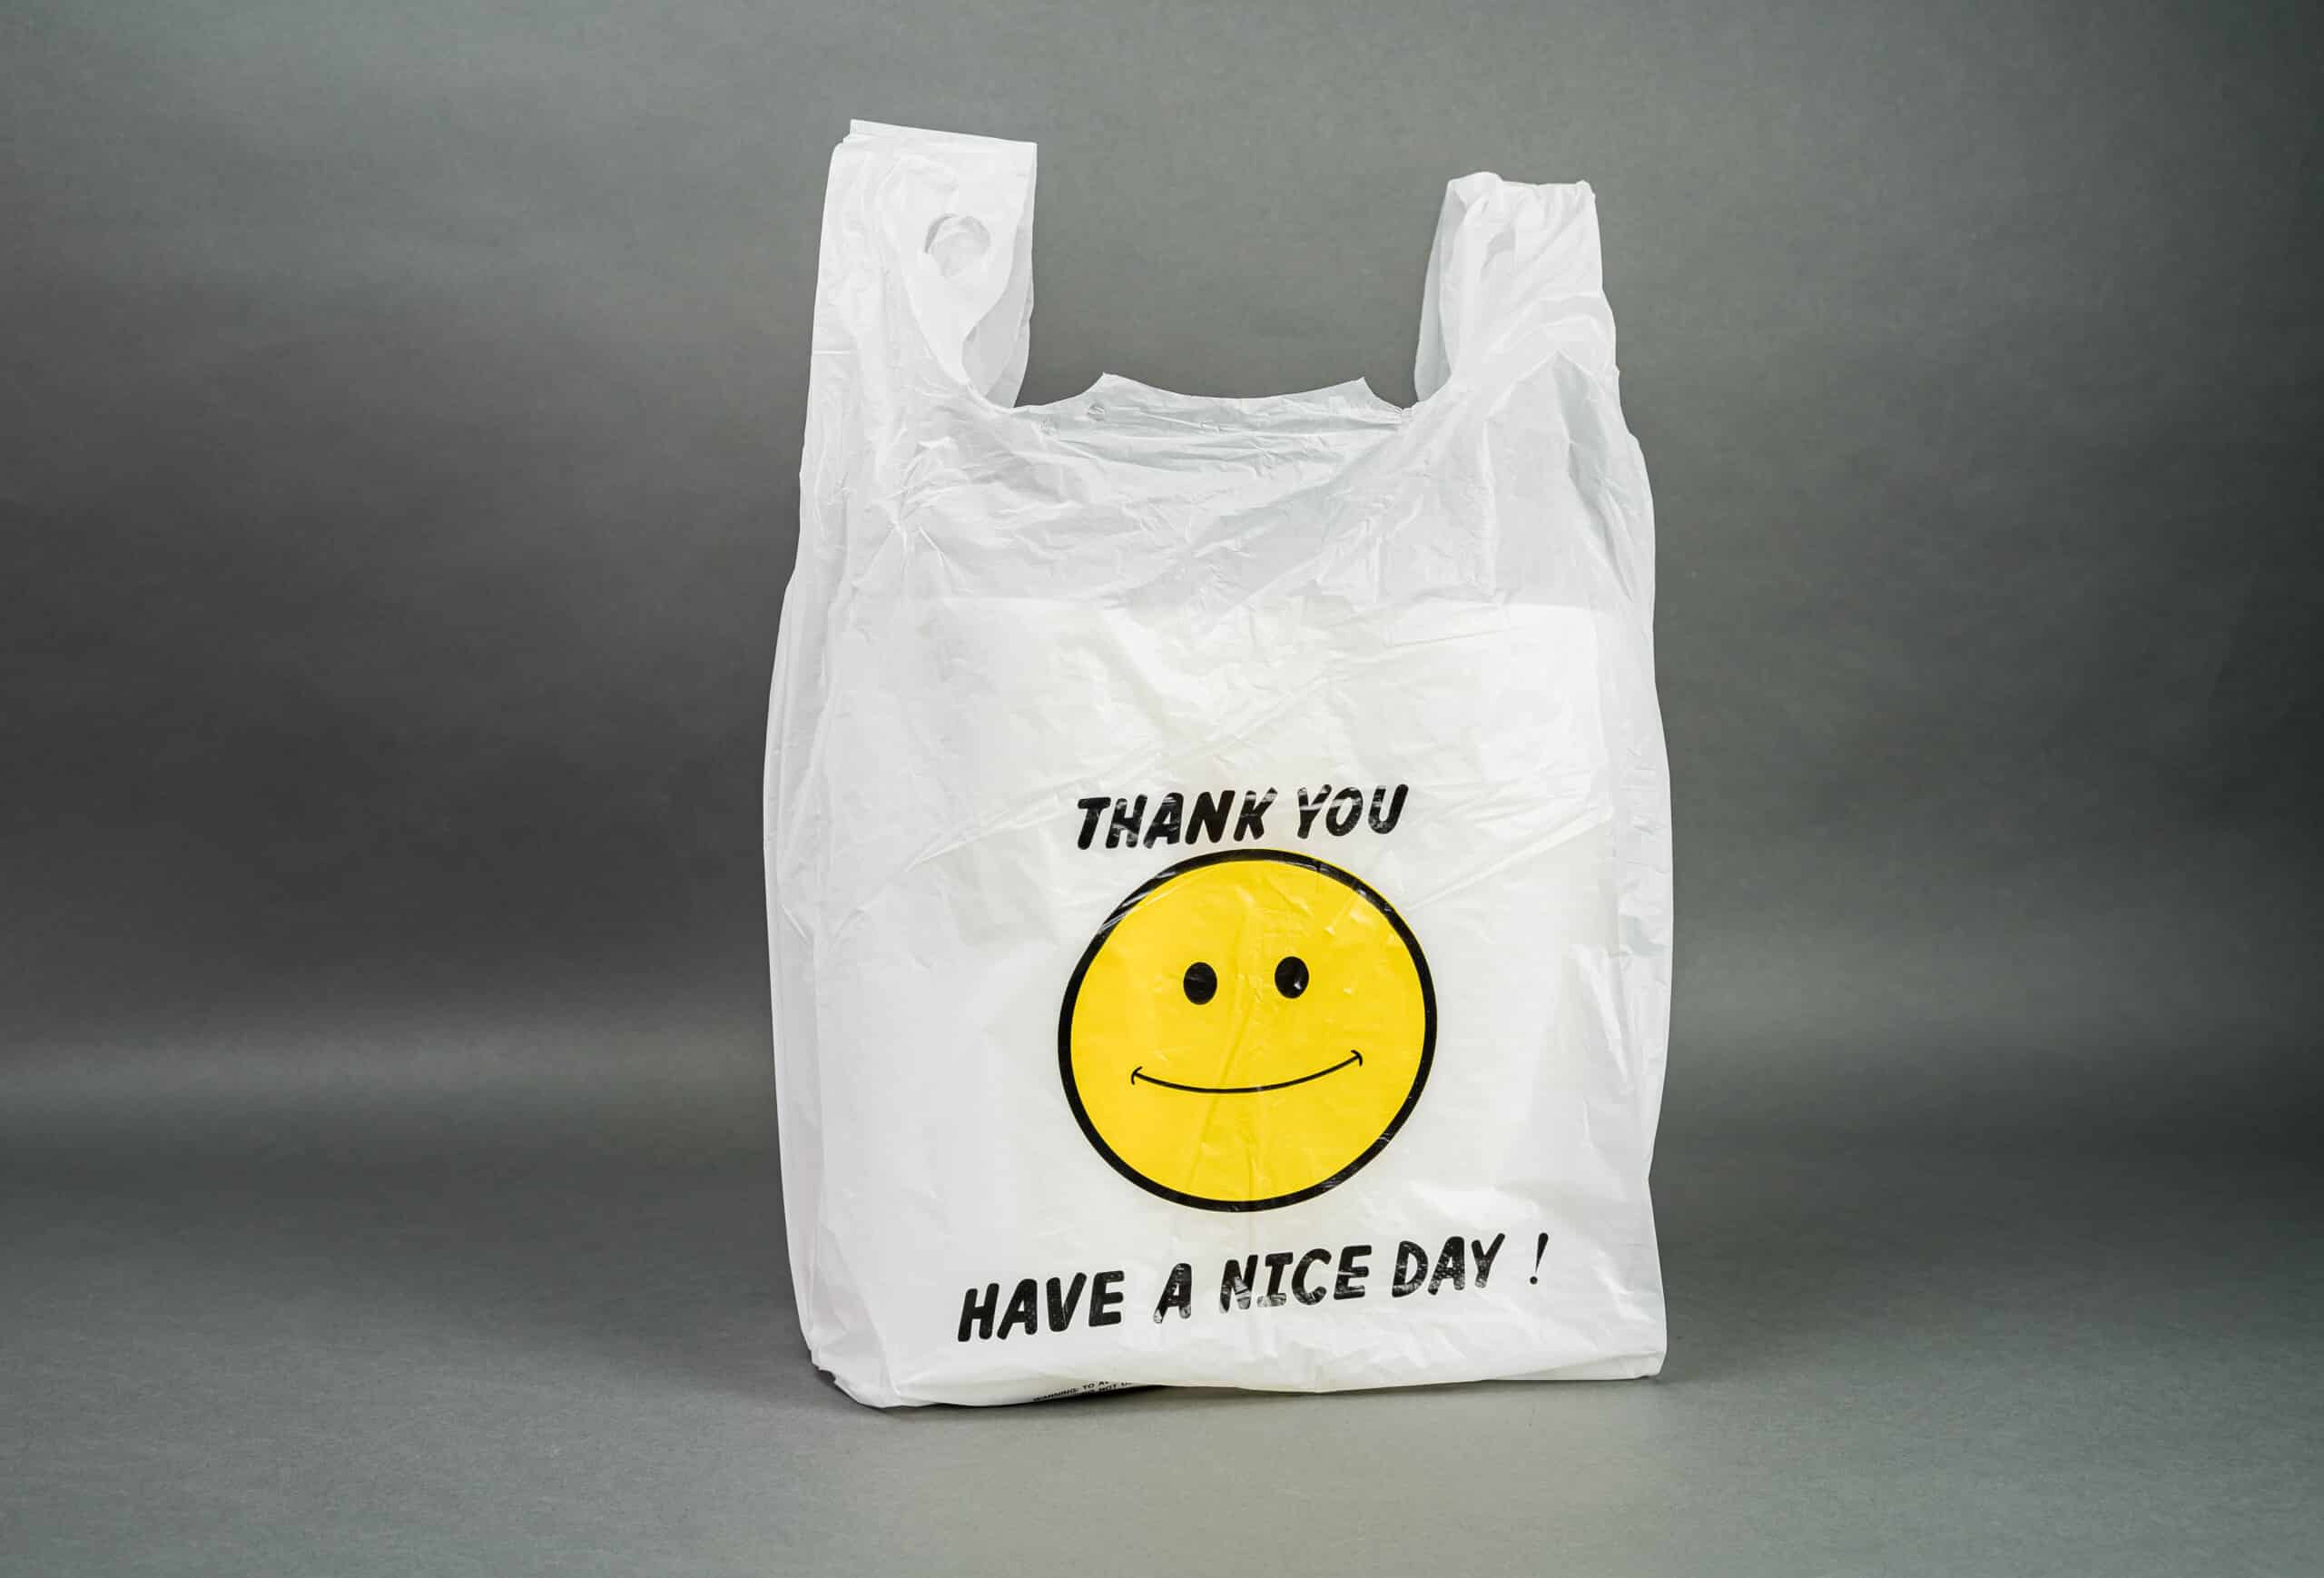 Custom branded shopping bags in bulk